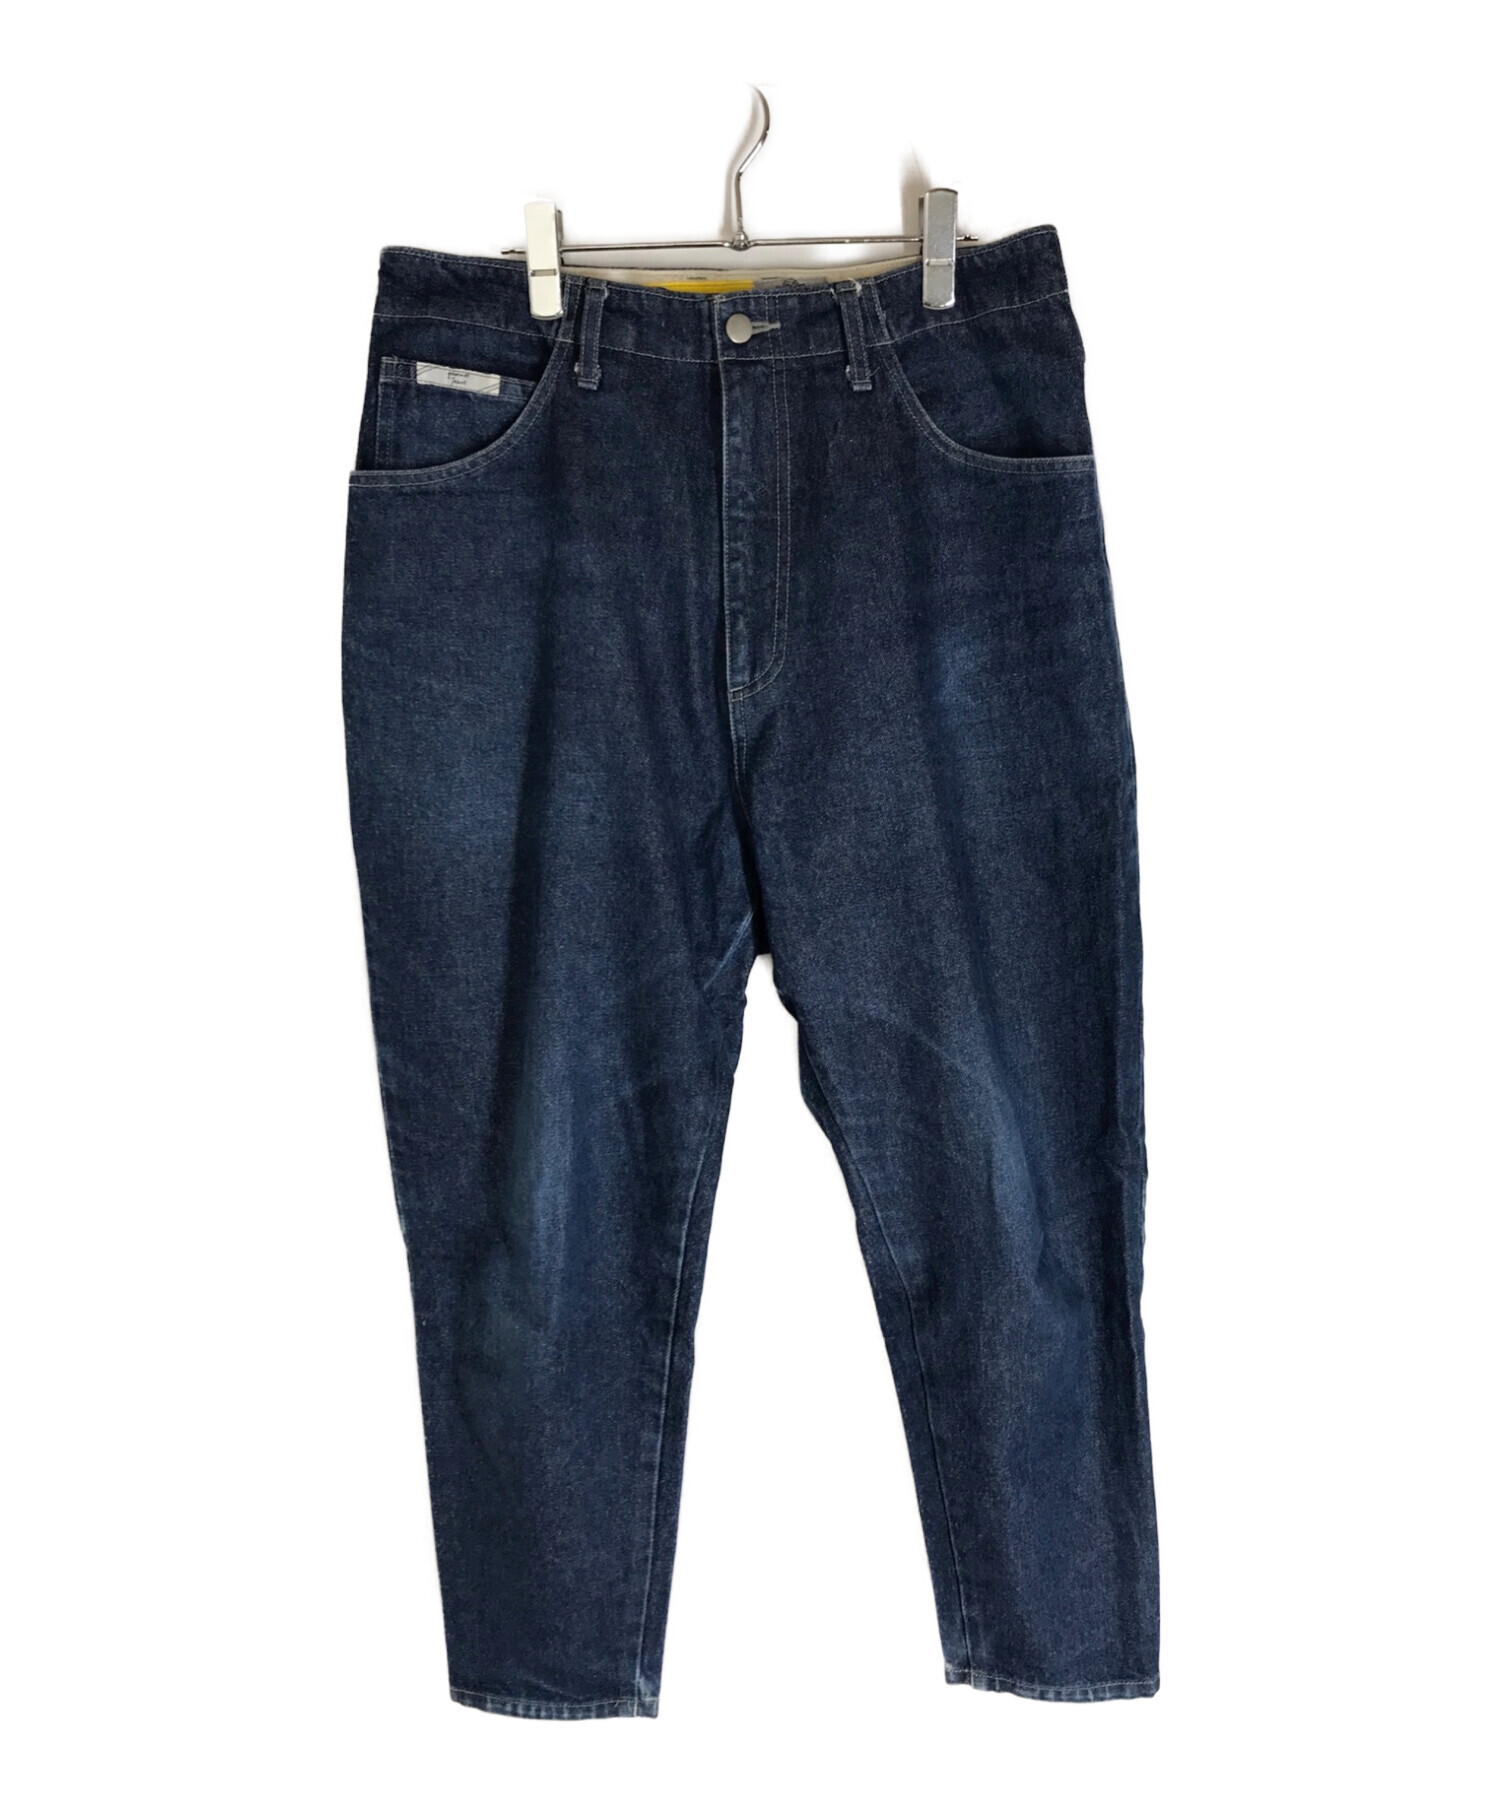 中古・古着通販】gourmet jeans (グルメジーンズ) デニムパンツ